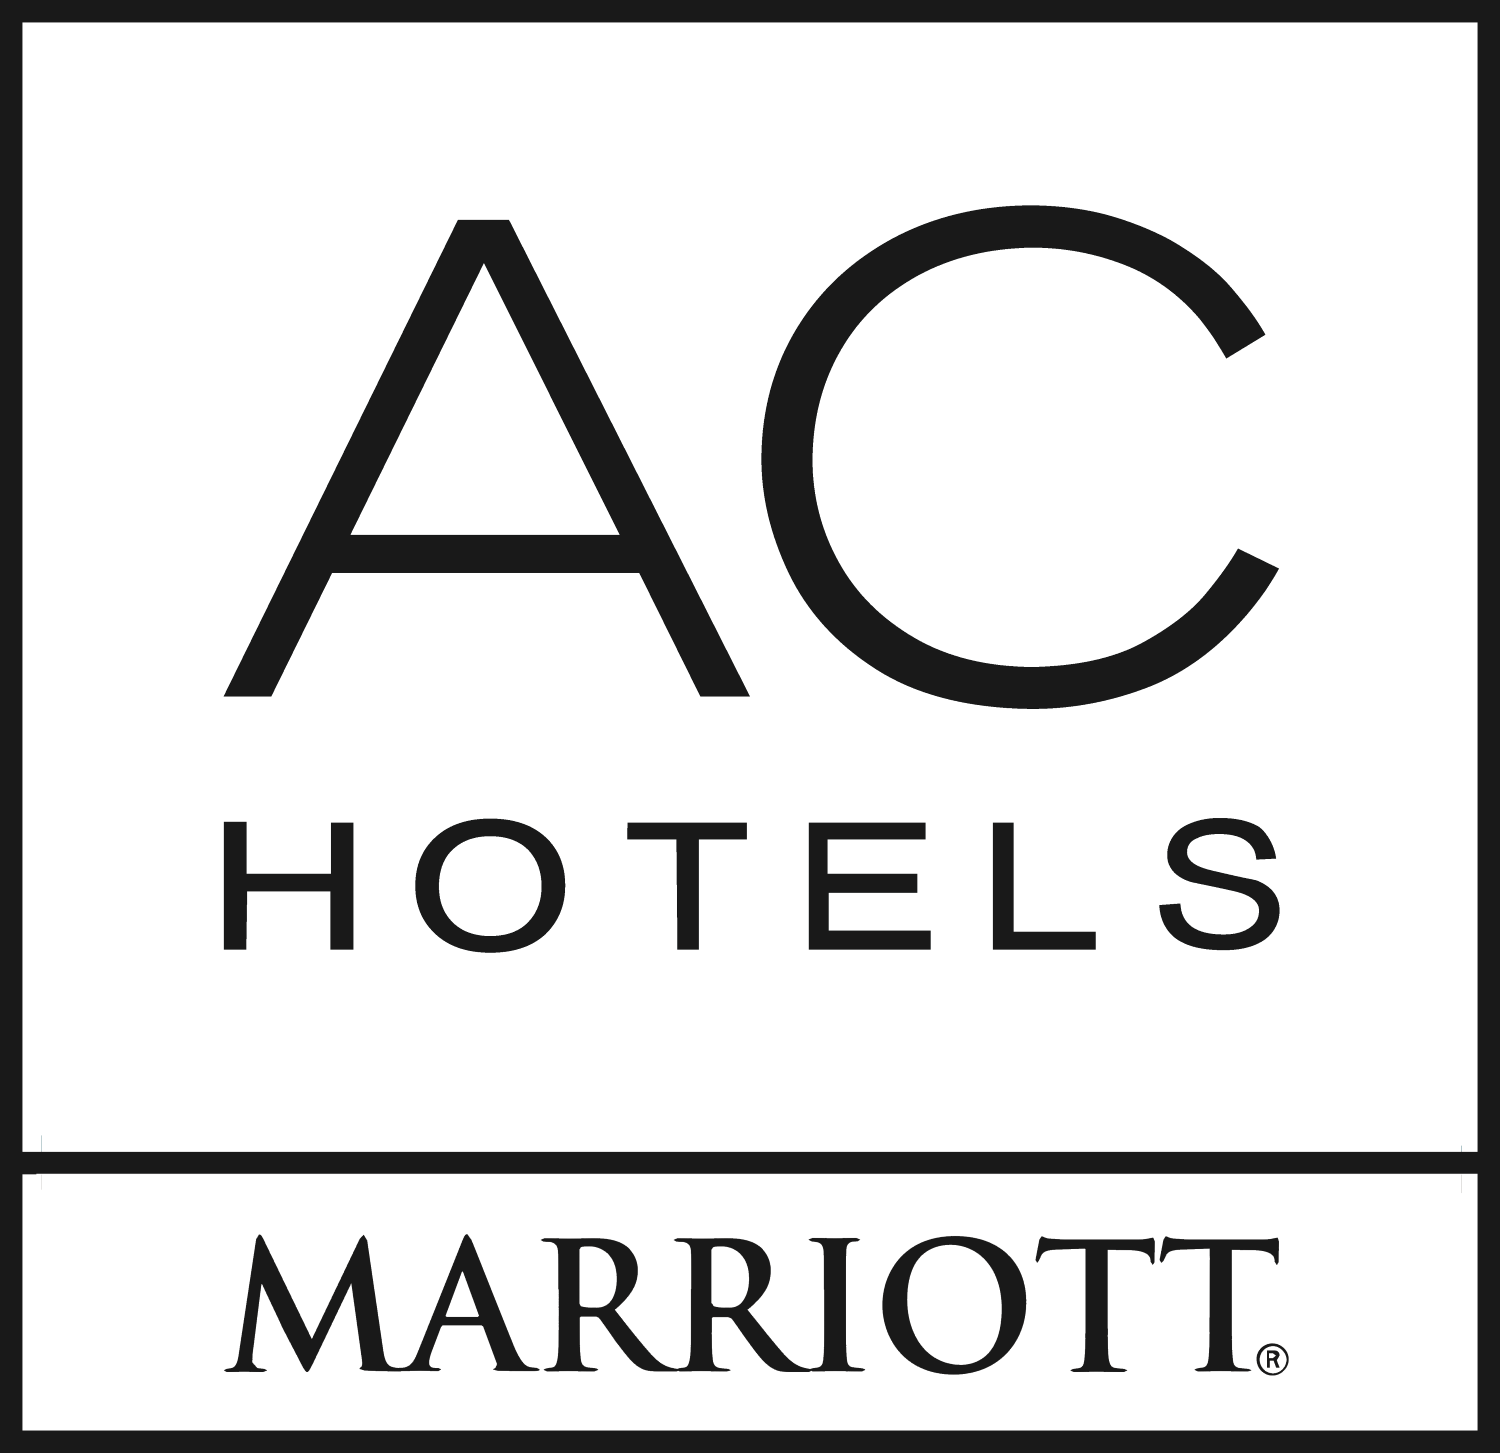 AC hotels marriott logos png #41799